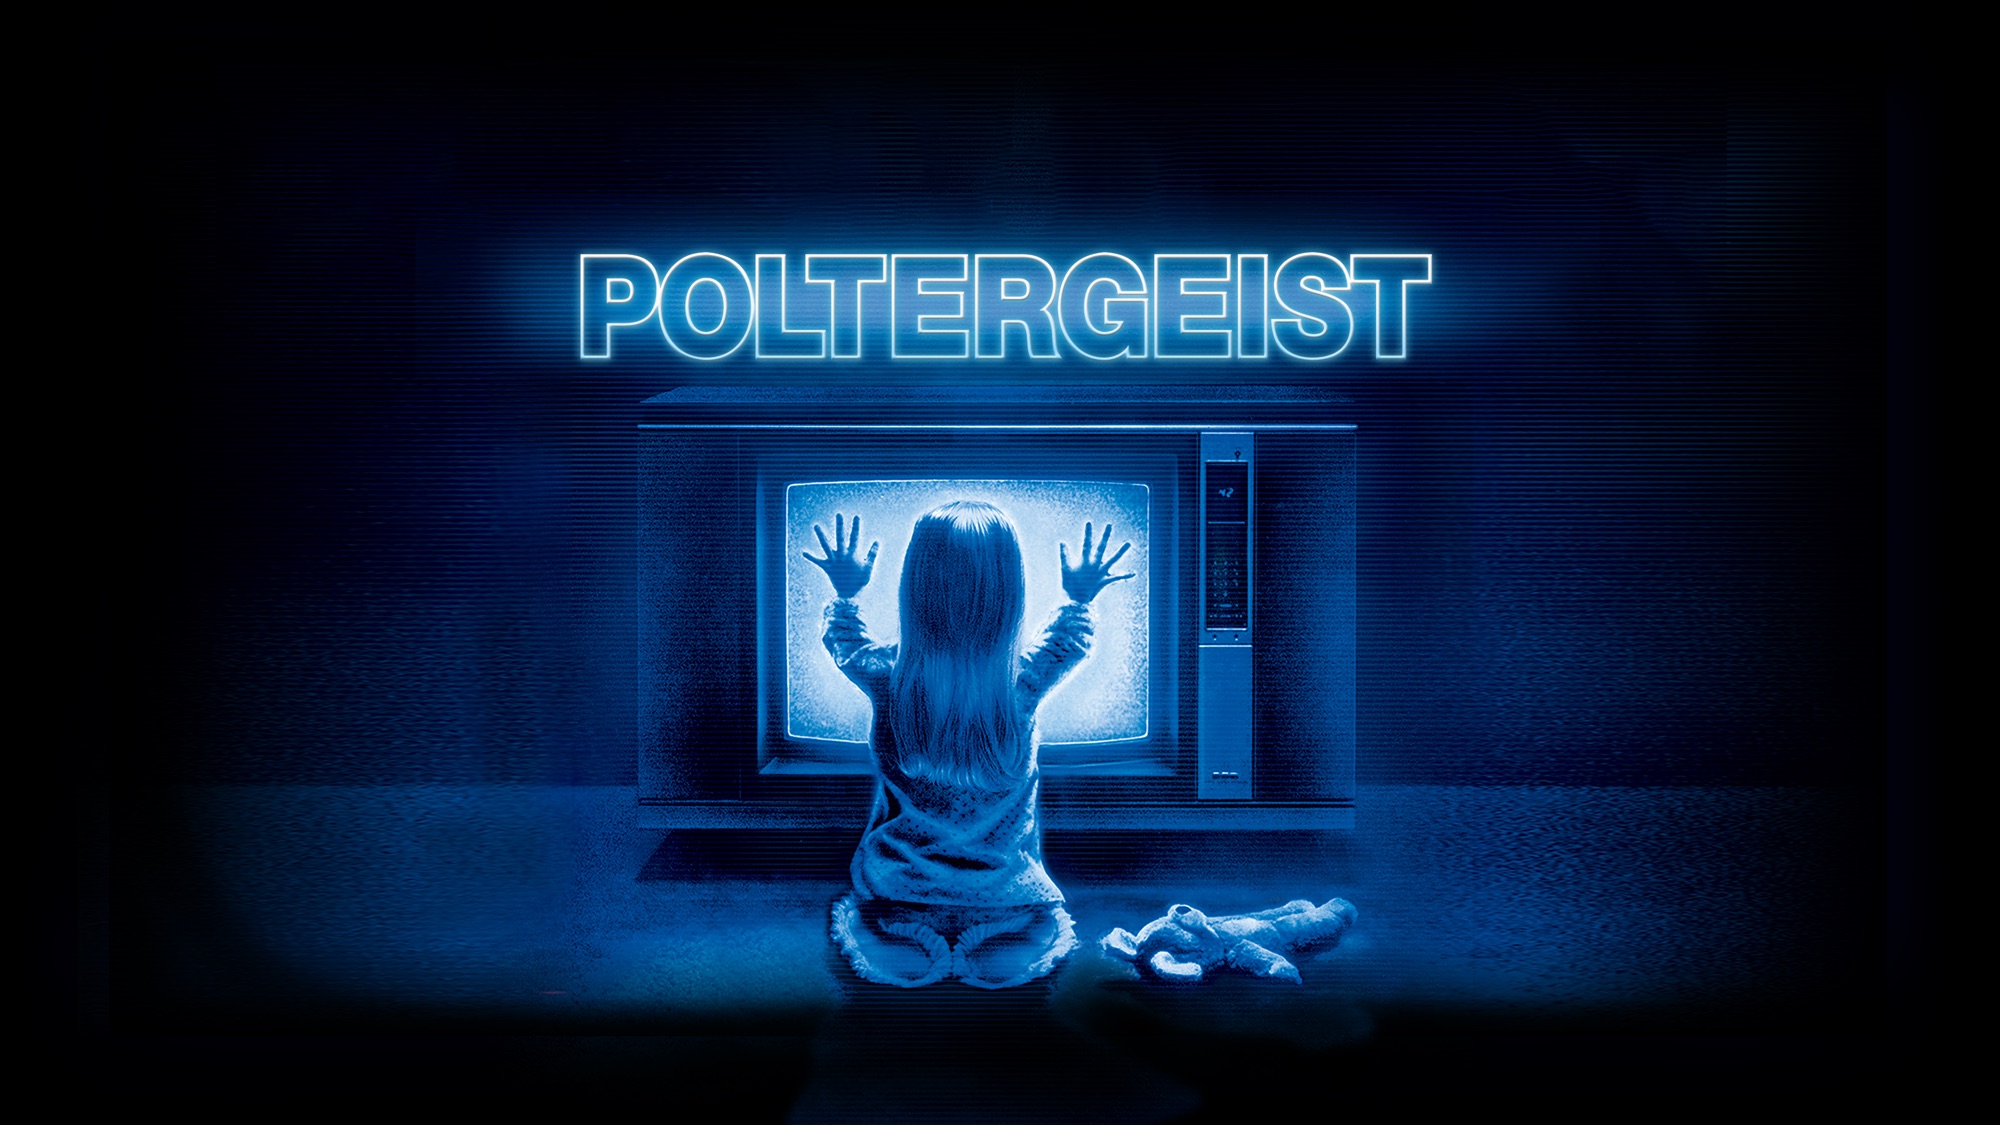 Movie Poltergeist (1982) HD Wallpaper | Background Image